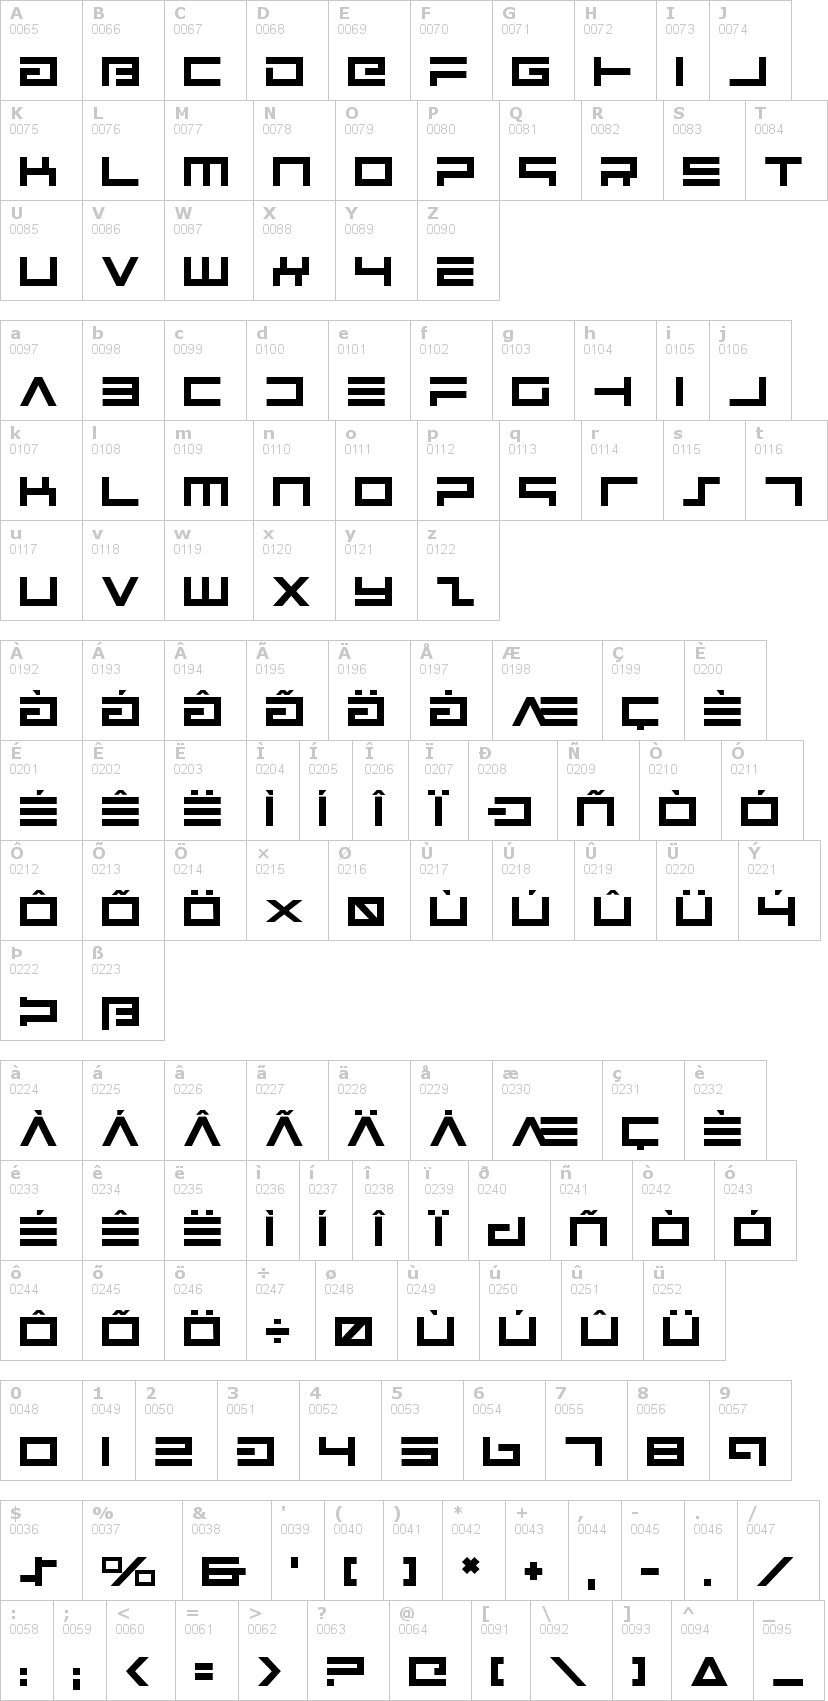 Lettere dell'alfabeto del font avenger con le quali è possibile realizzare adesivi prespaziati